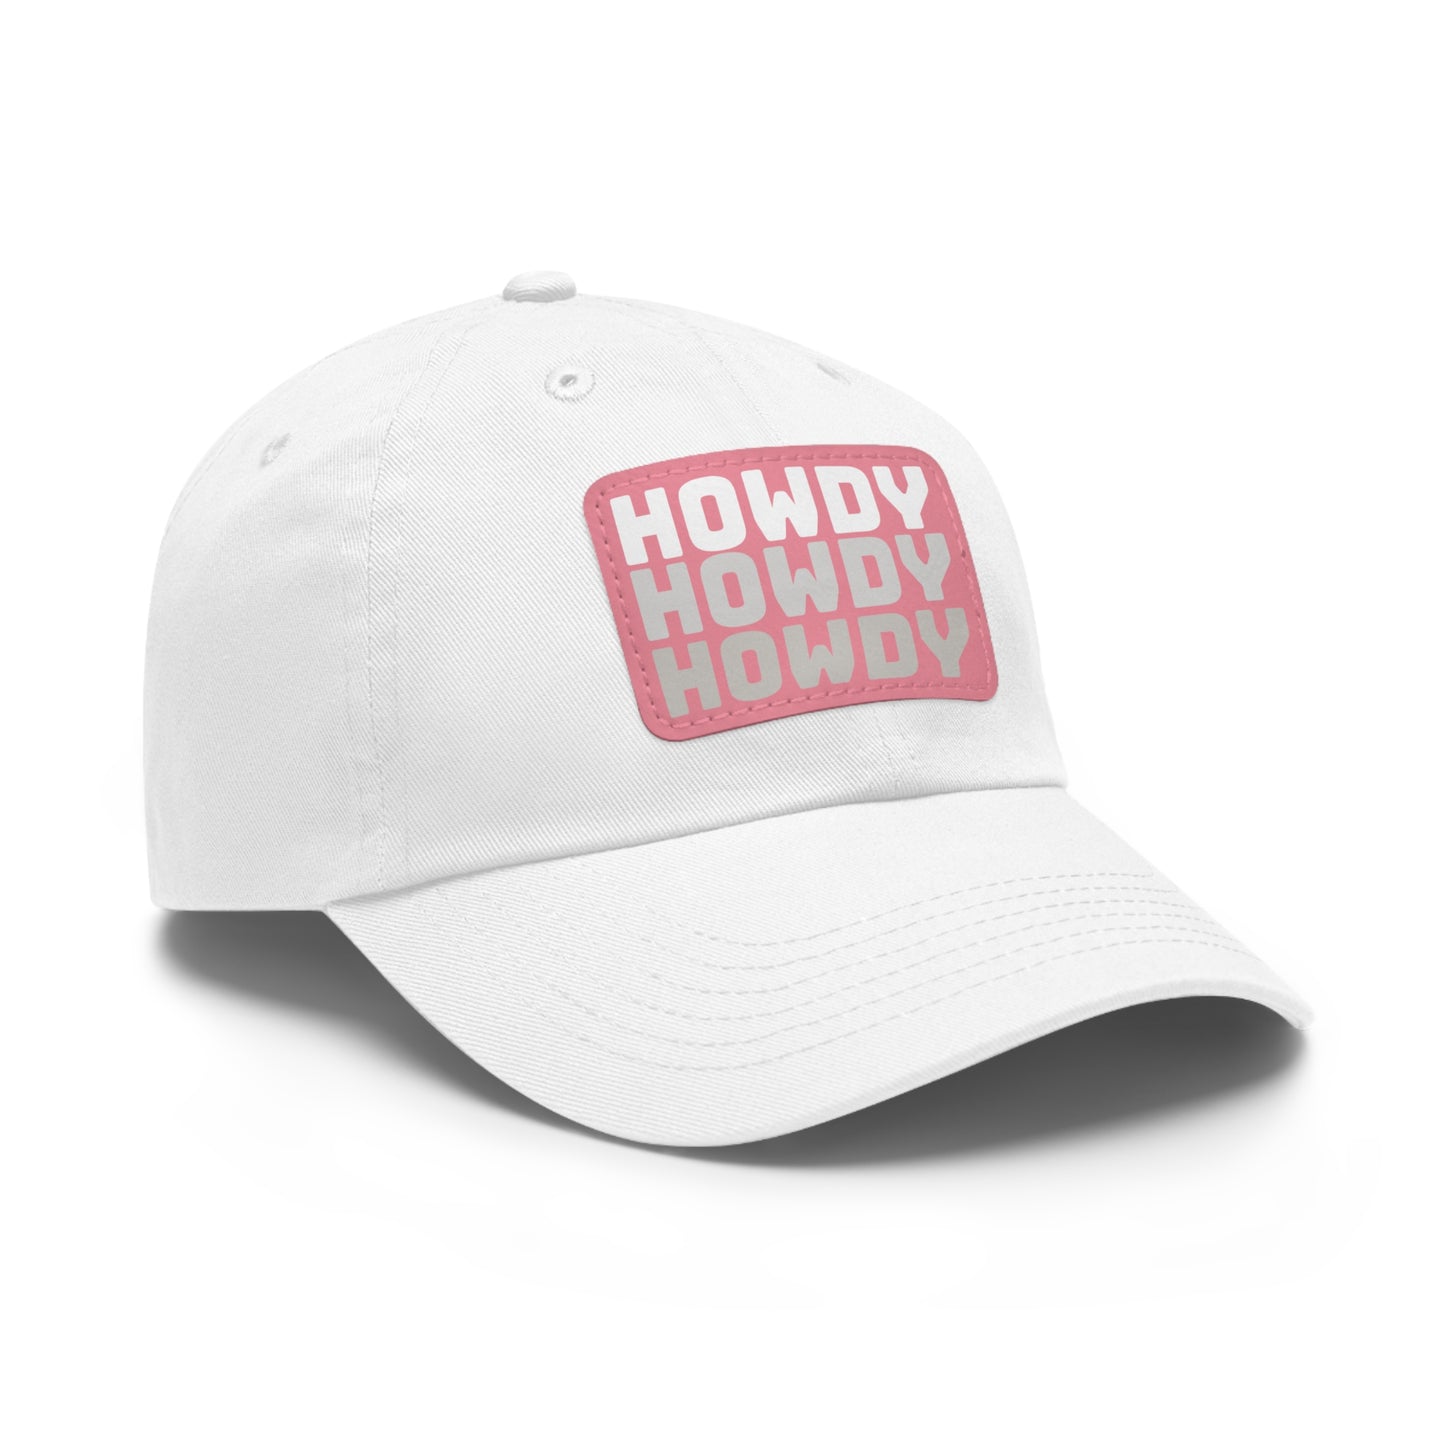 Howdy Howdy Howdy HOC Ball Cap